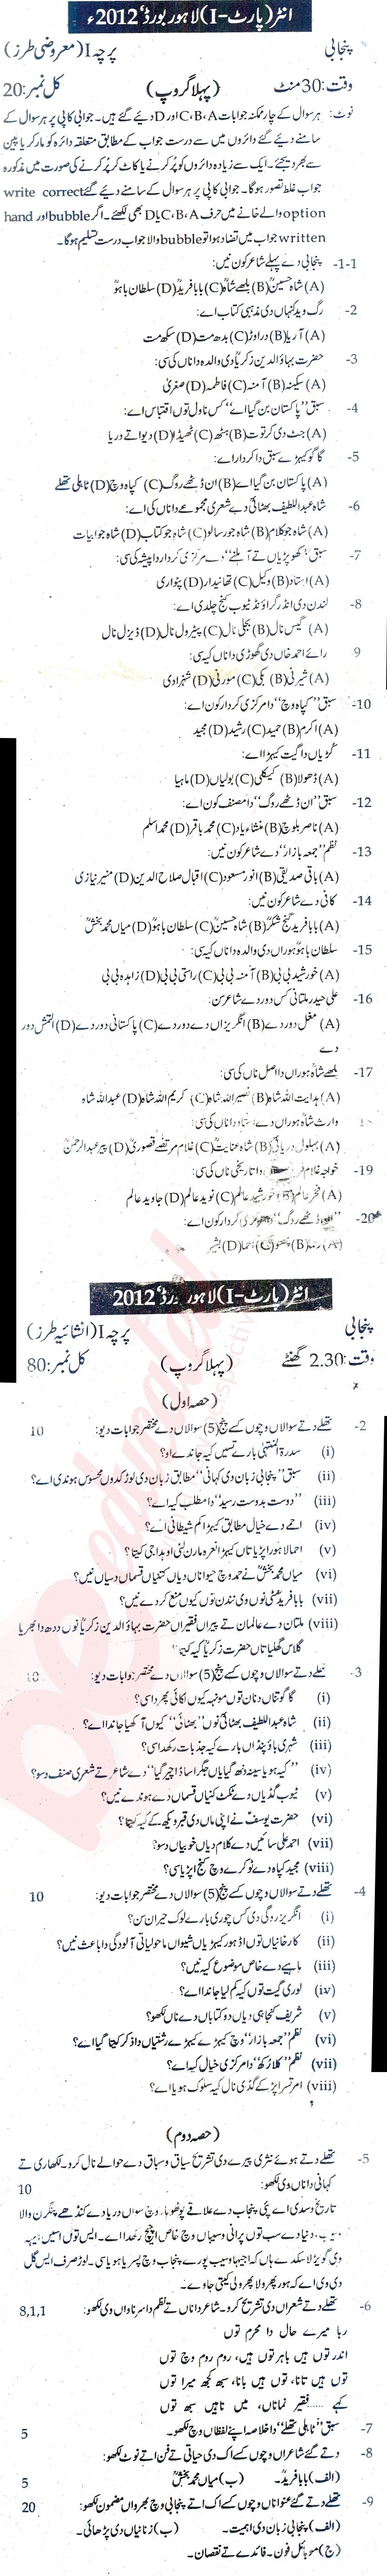 Punjabi FA Part 1 Past Paper Group 1 BISE Lahore 2012